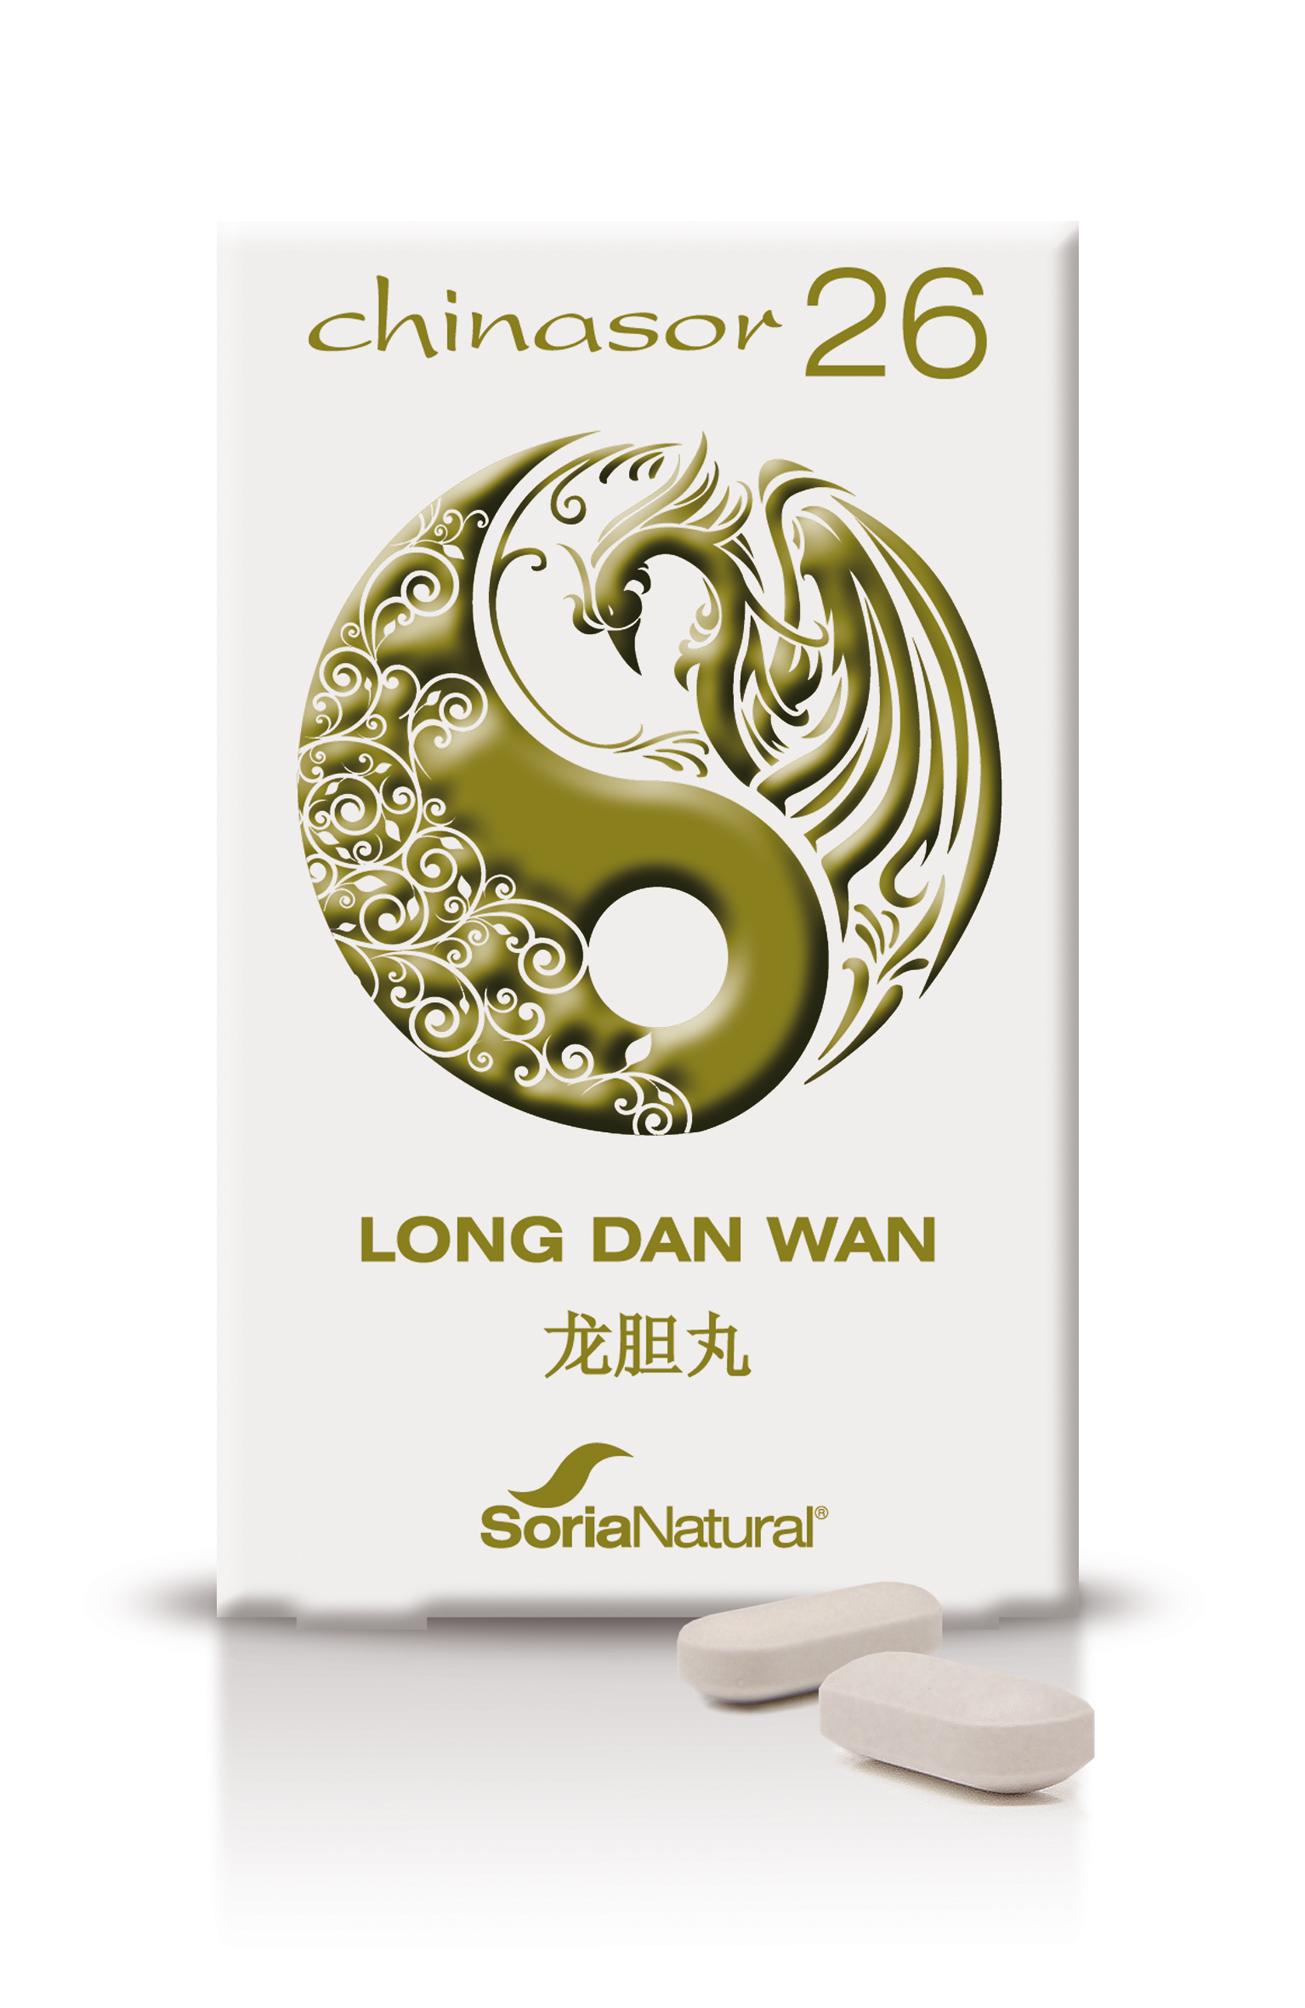 chinasor-26-long-dan-wan-soria-natural